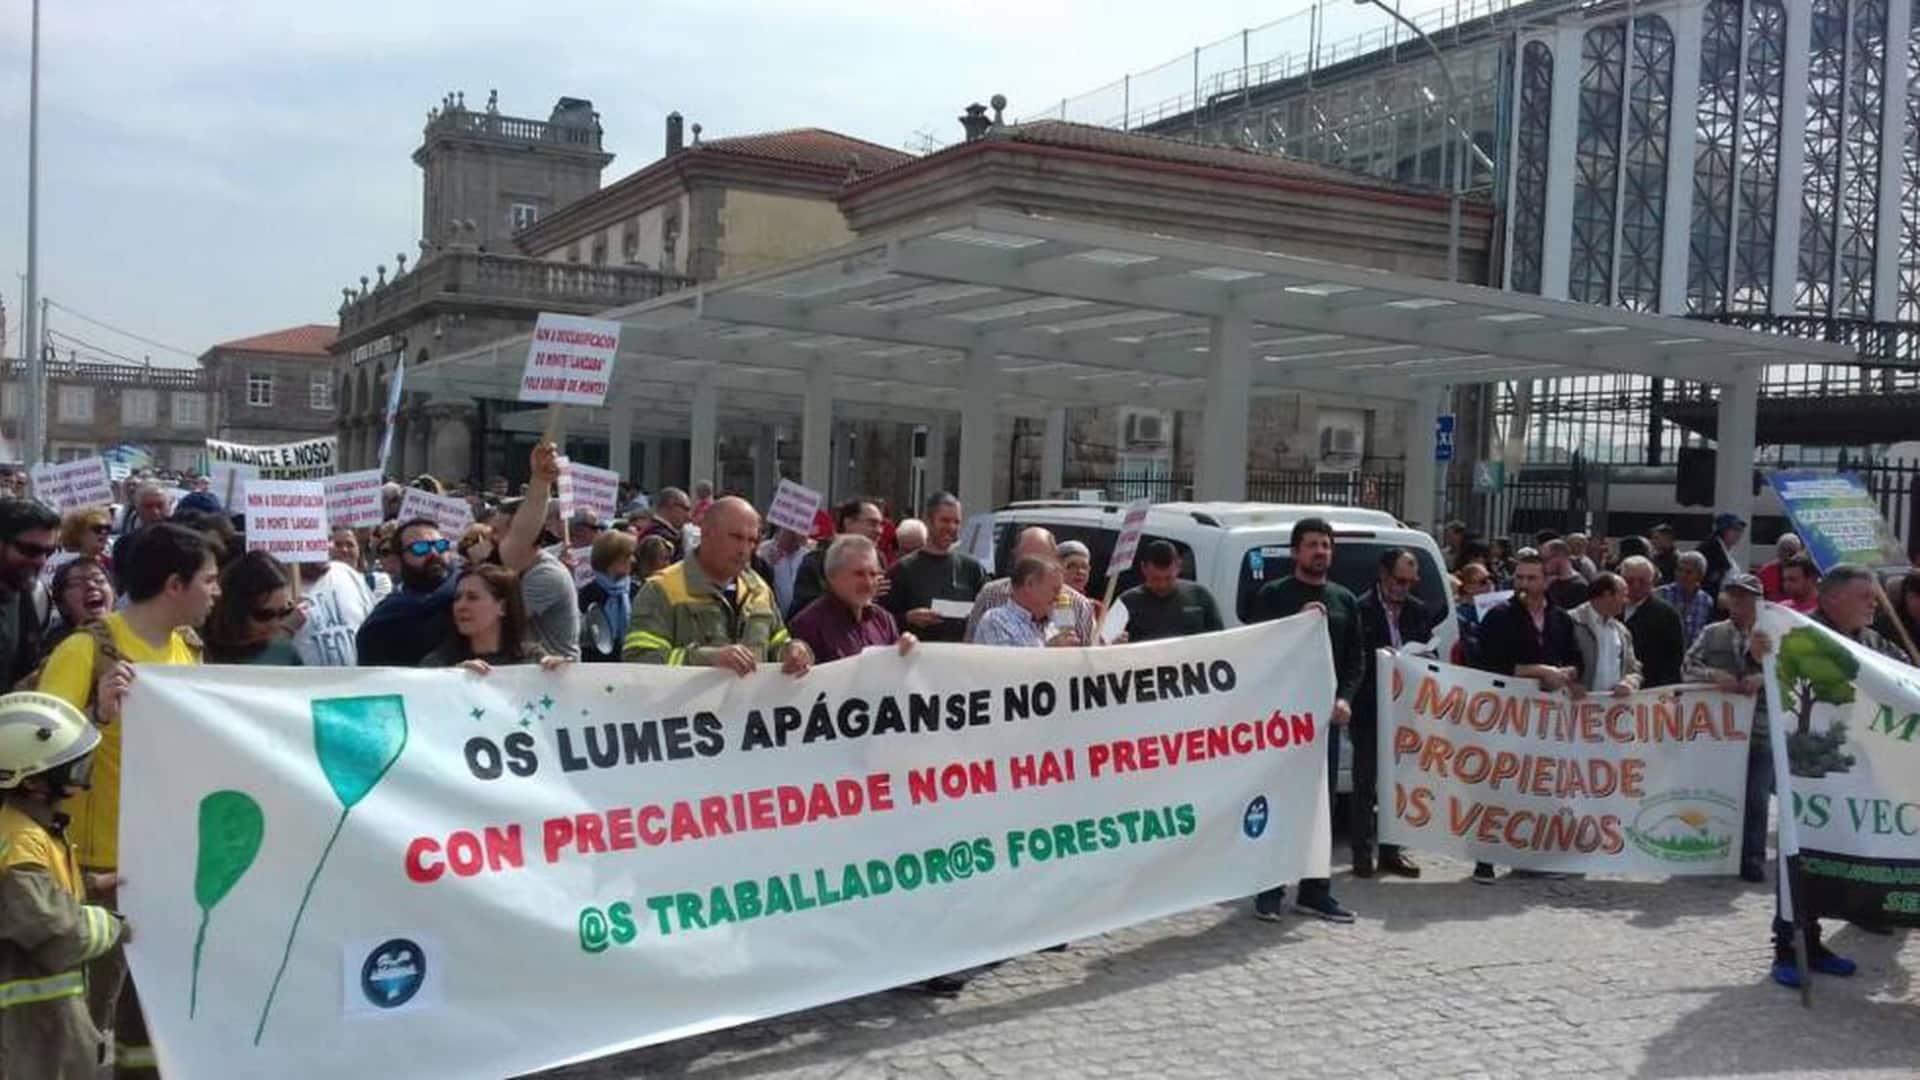 Imagen de archivo de una manifestación en defensa del monte vecinal | EP